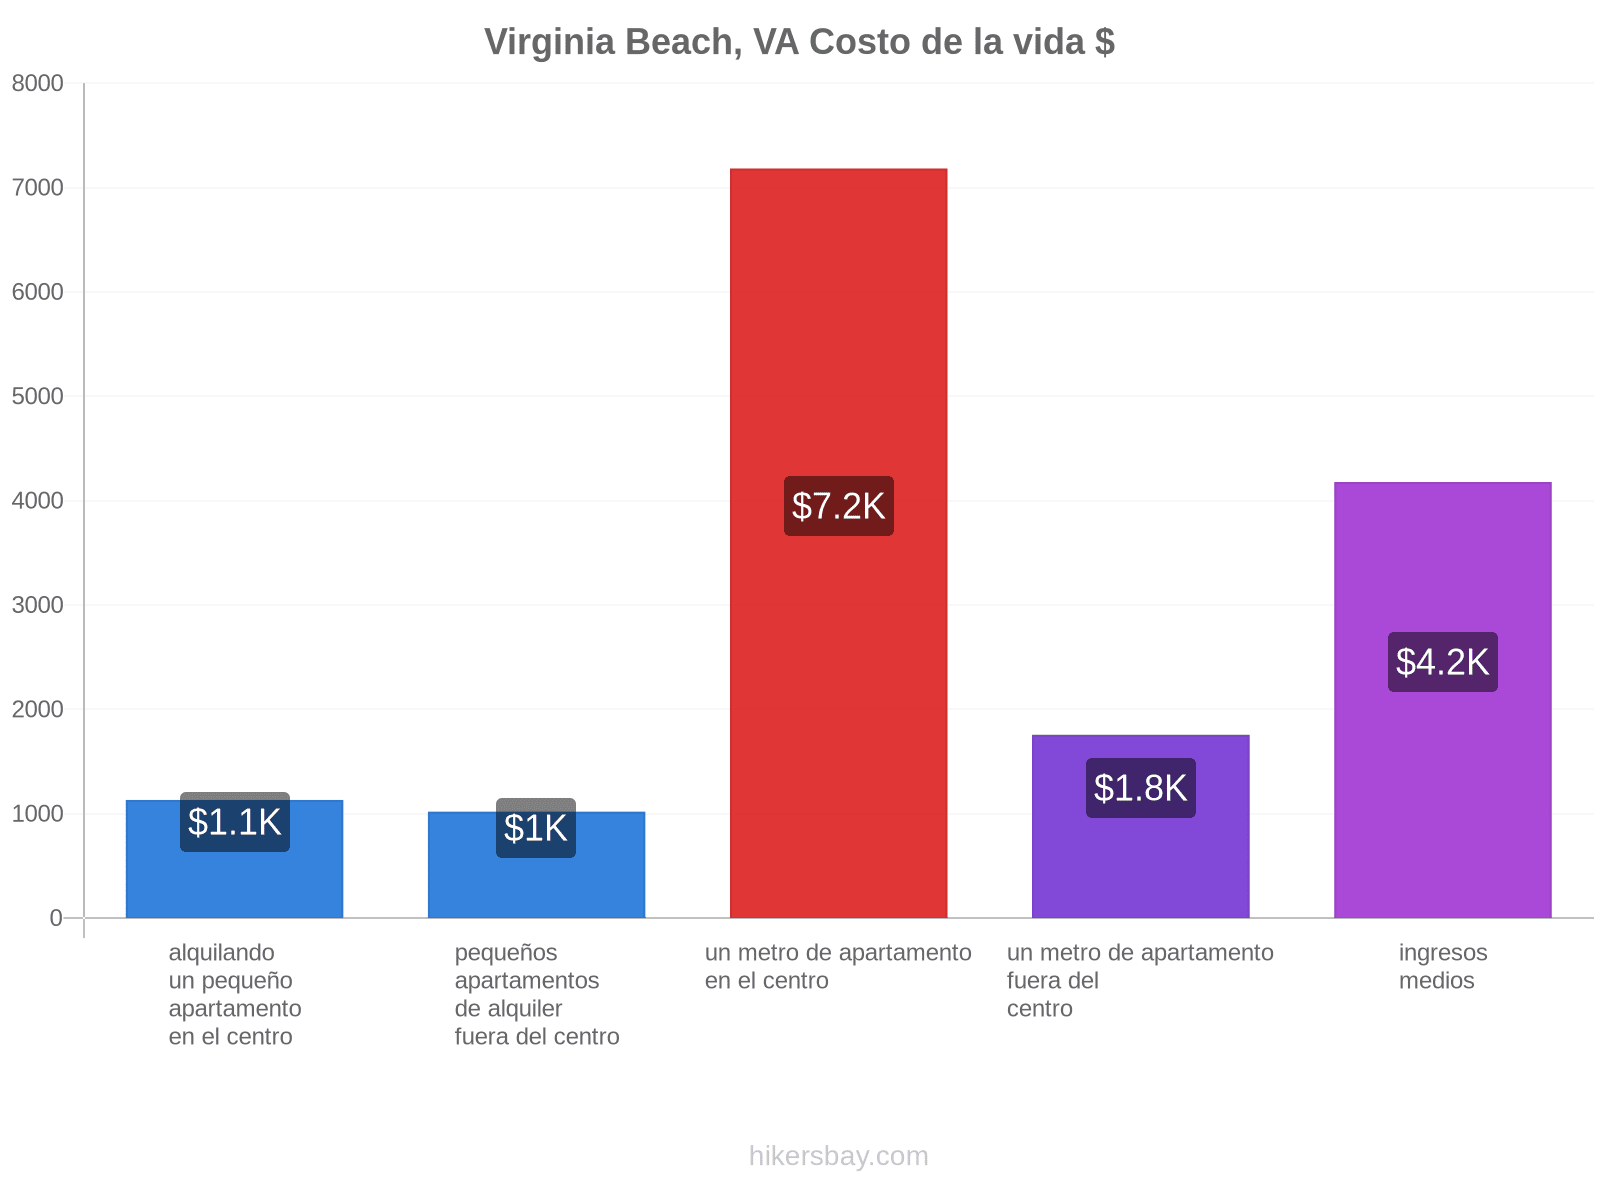 Virginia Beach, VA costo de la vida hikersbay.com